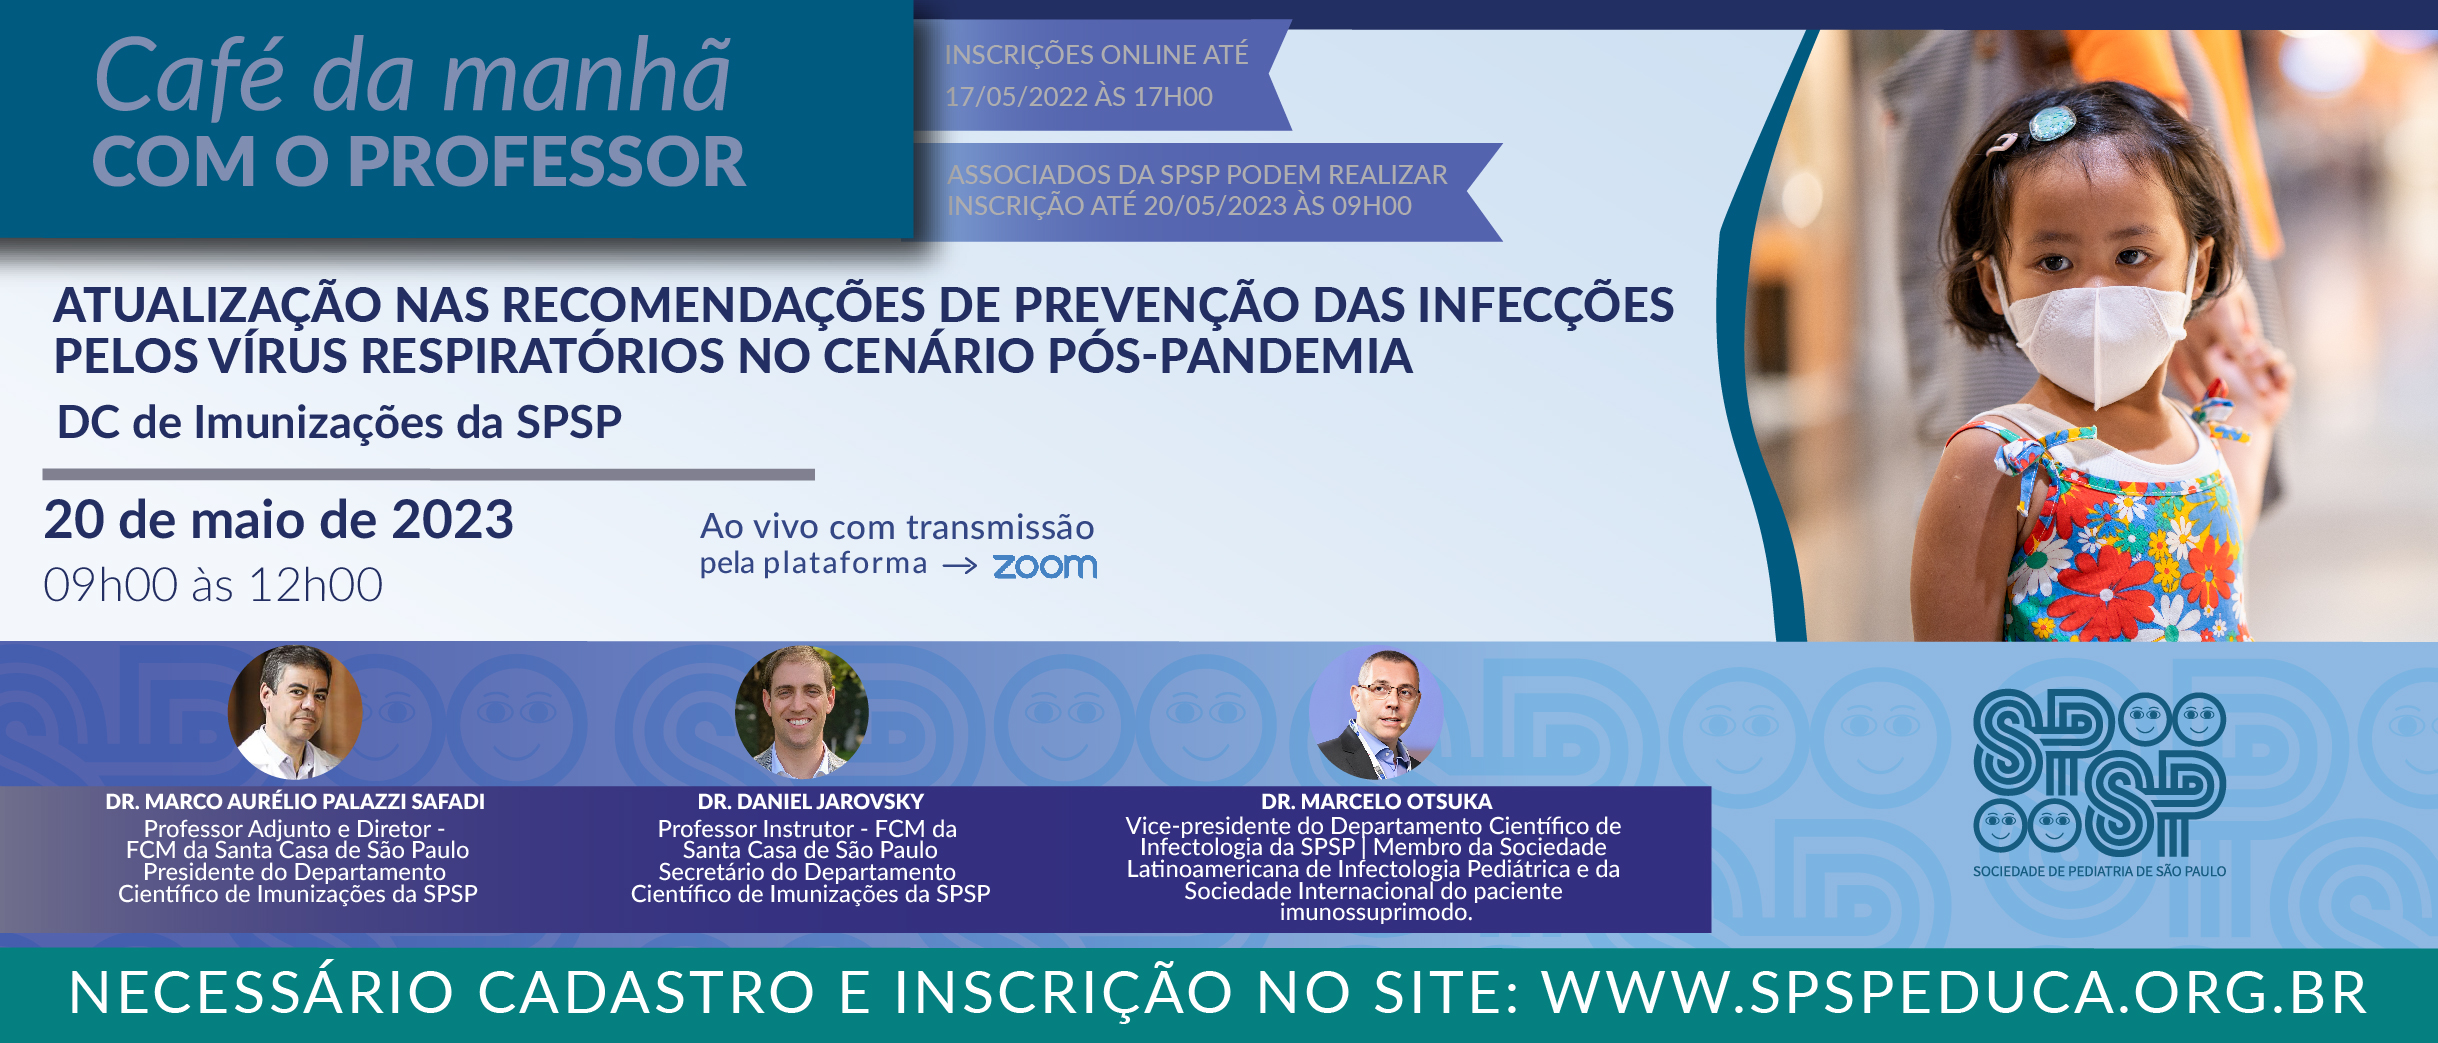 Café da Manhã com o Professor – Atualização nas recomendações de prevenção das infecções pelos vírus respiratórios no cenário pós-pandemia